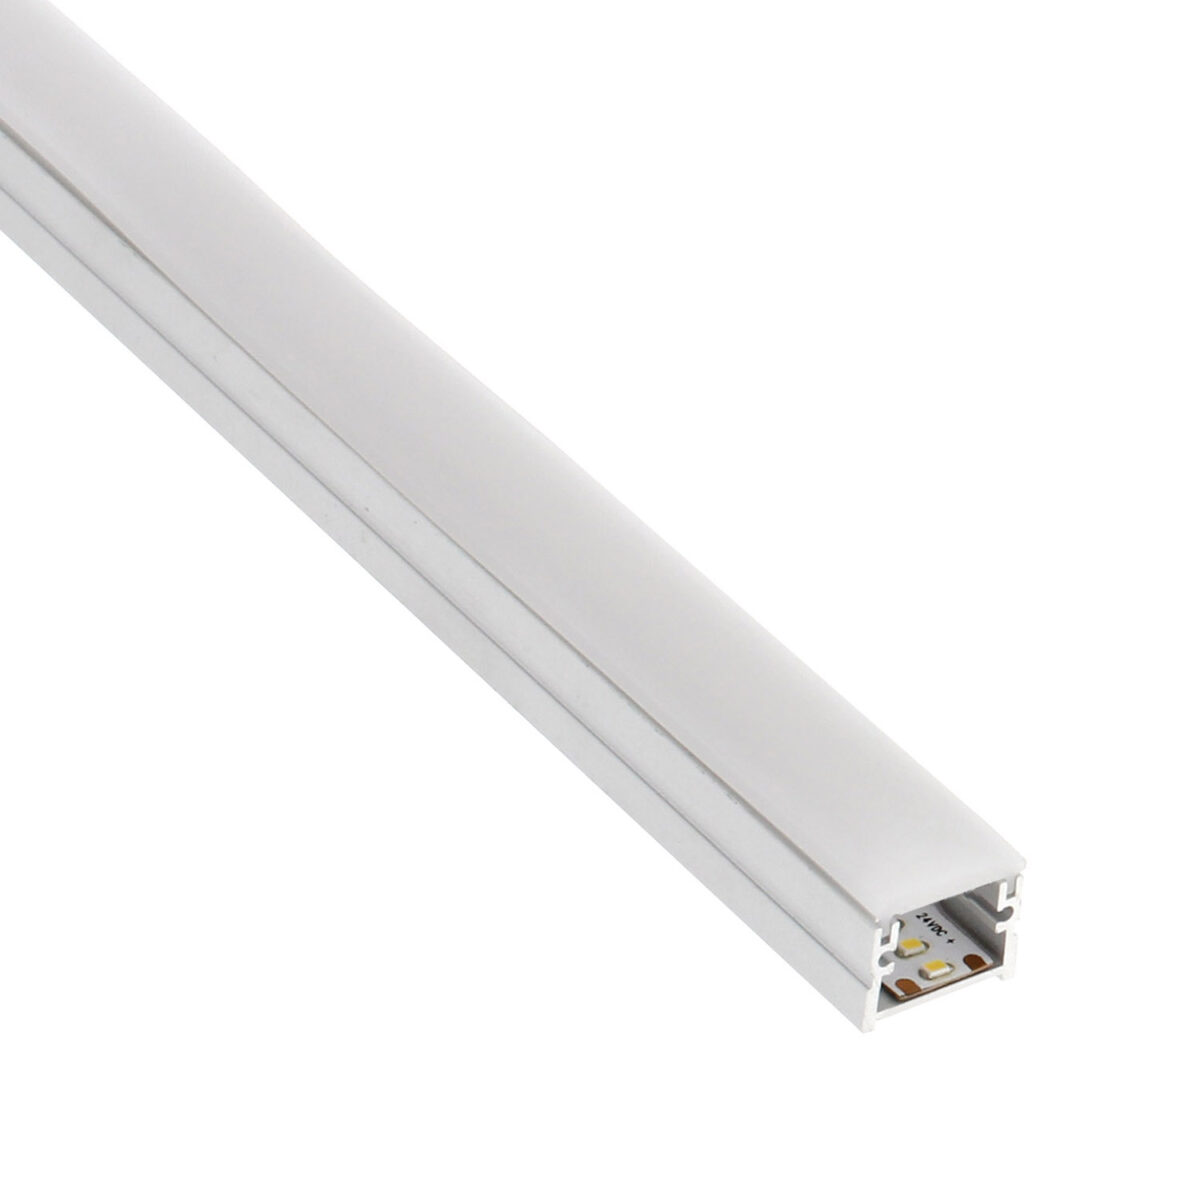 KIT - Perfil aluminio OSY para tiras LED